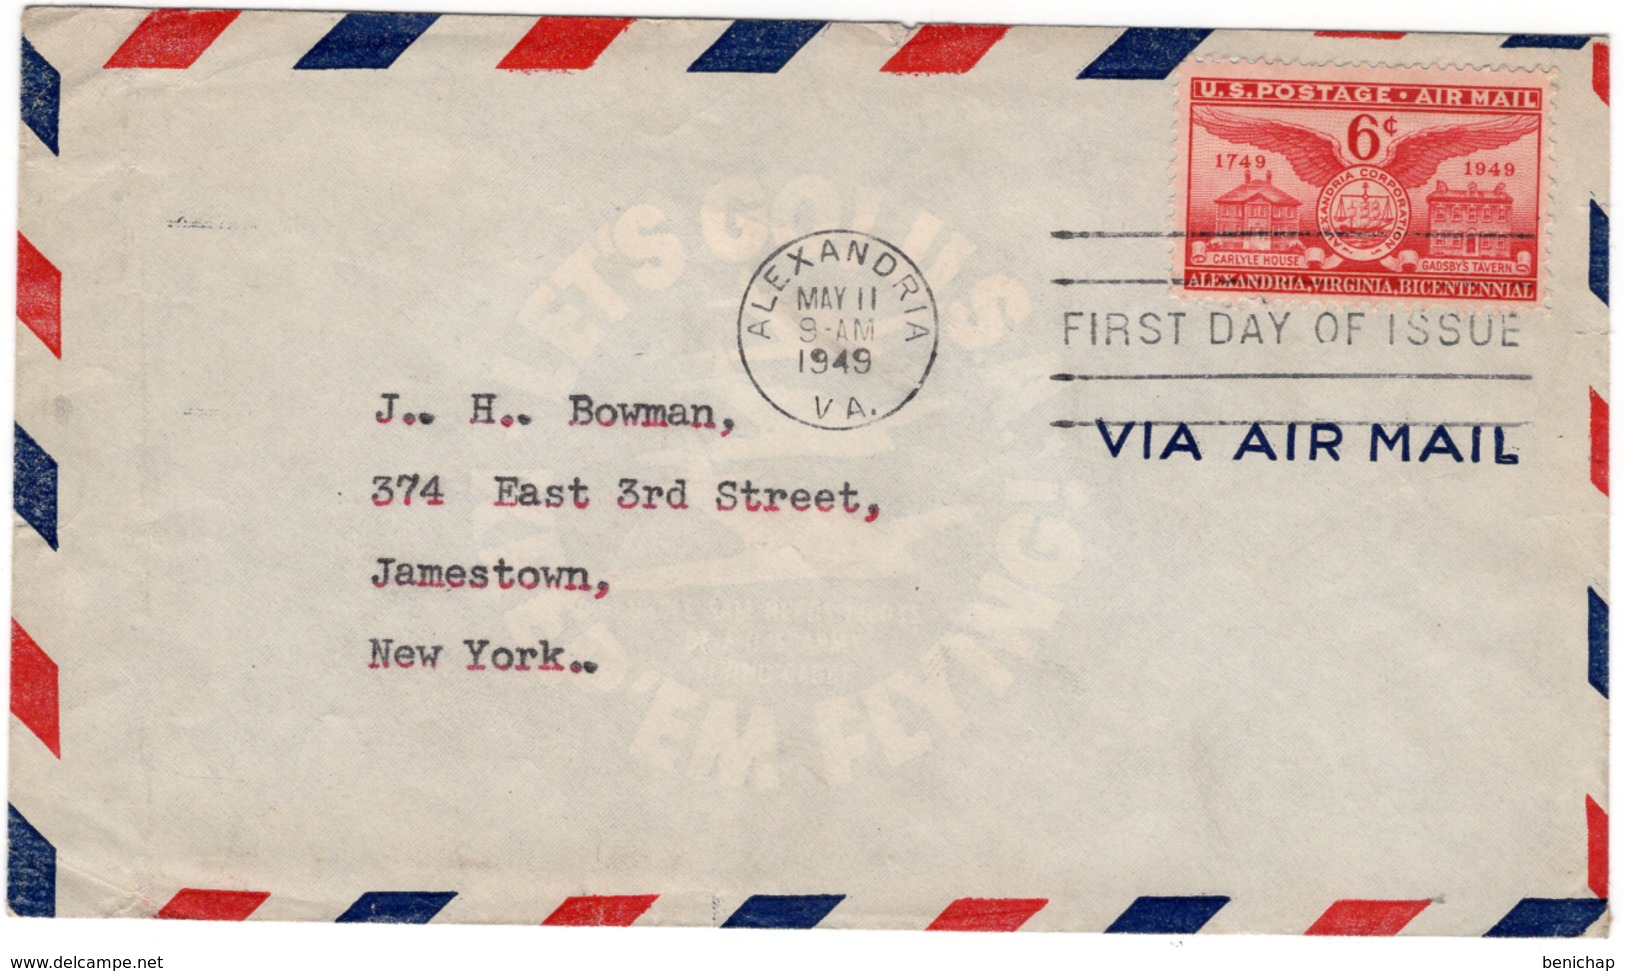 (R24) SCOTT C40 - FDI - VIA AIR MAIL - ALEXANDRIA - NEW YORK - 1949. - 2c. 1941-1960 Briefe U. Dokumente